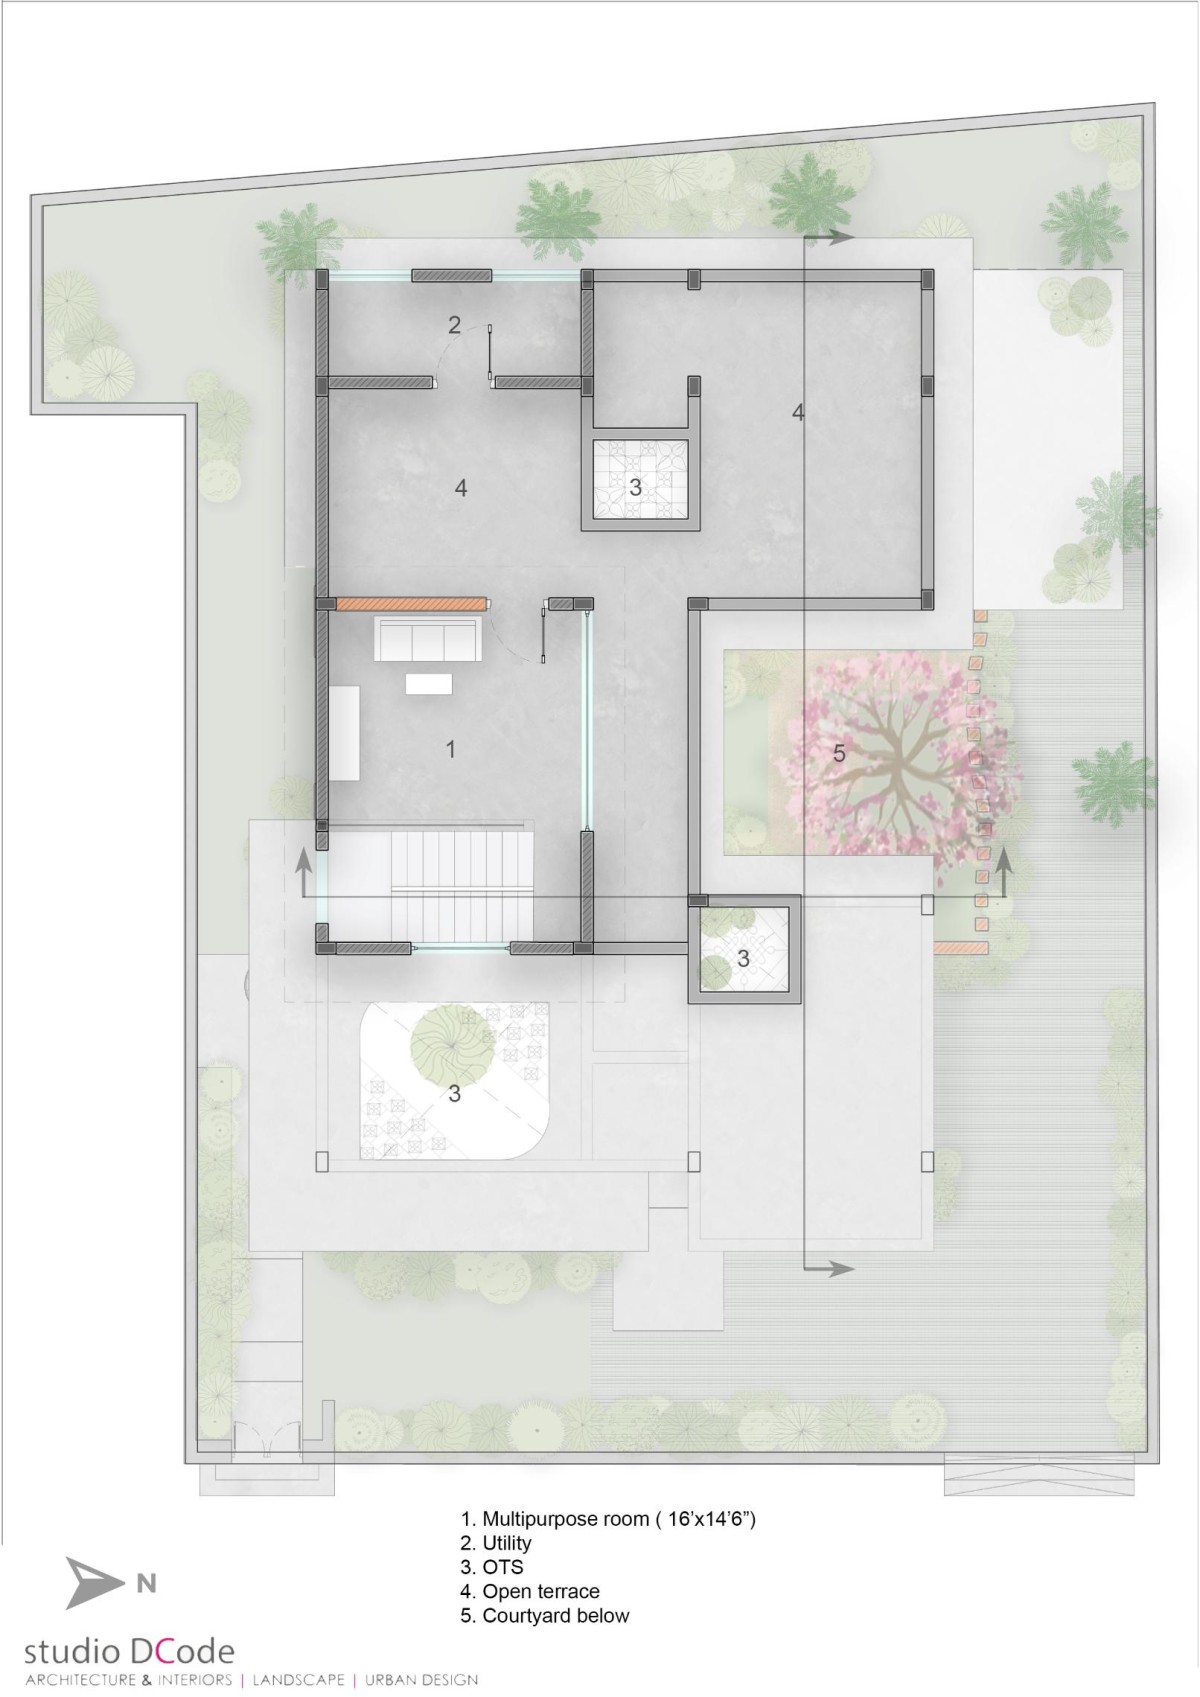 Second Floor Plan of Alai by Studio Dcode